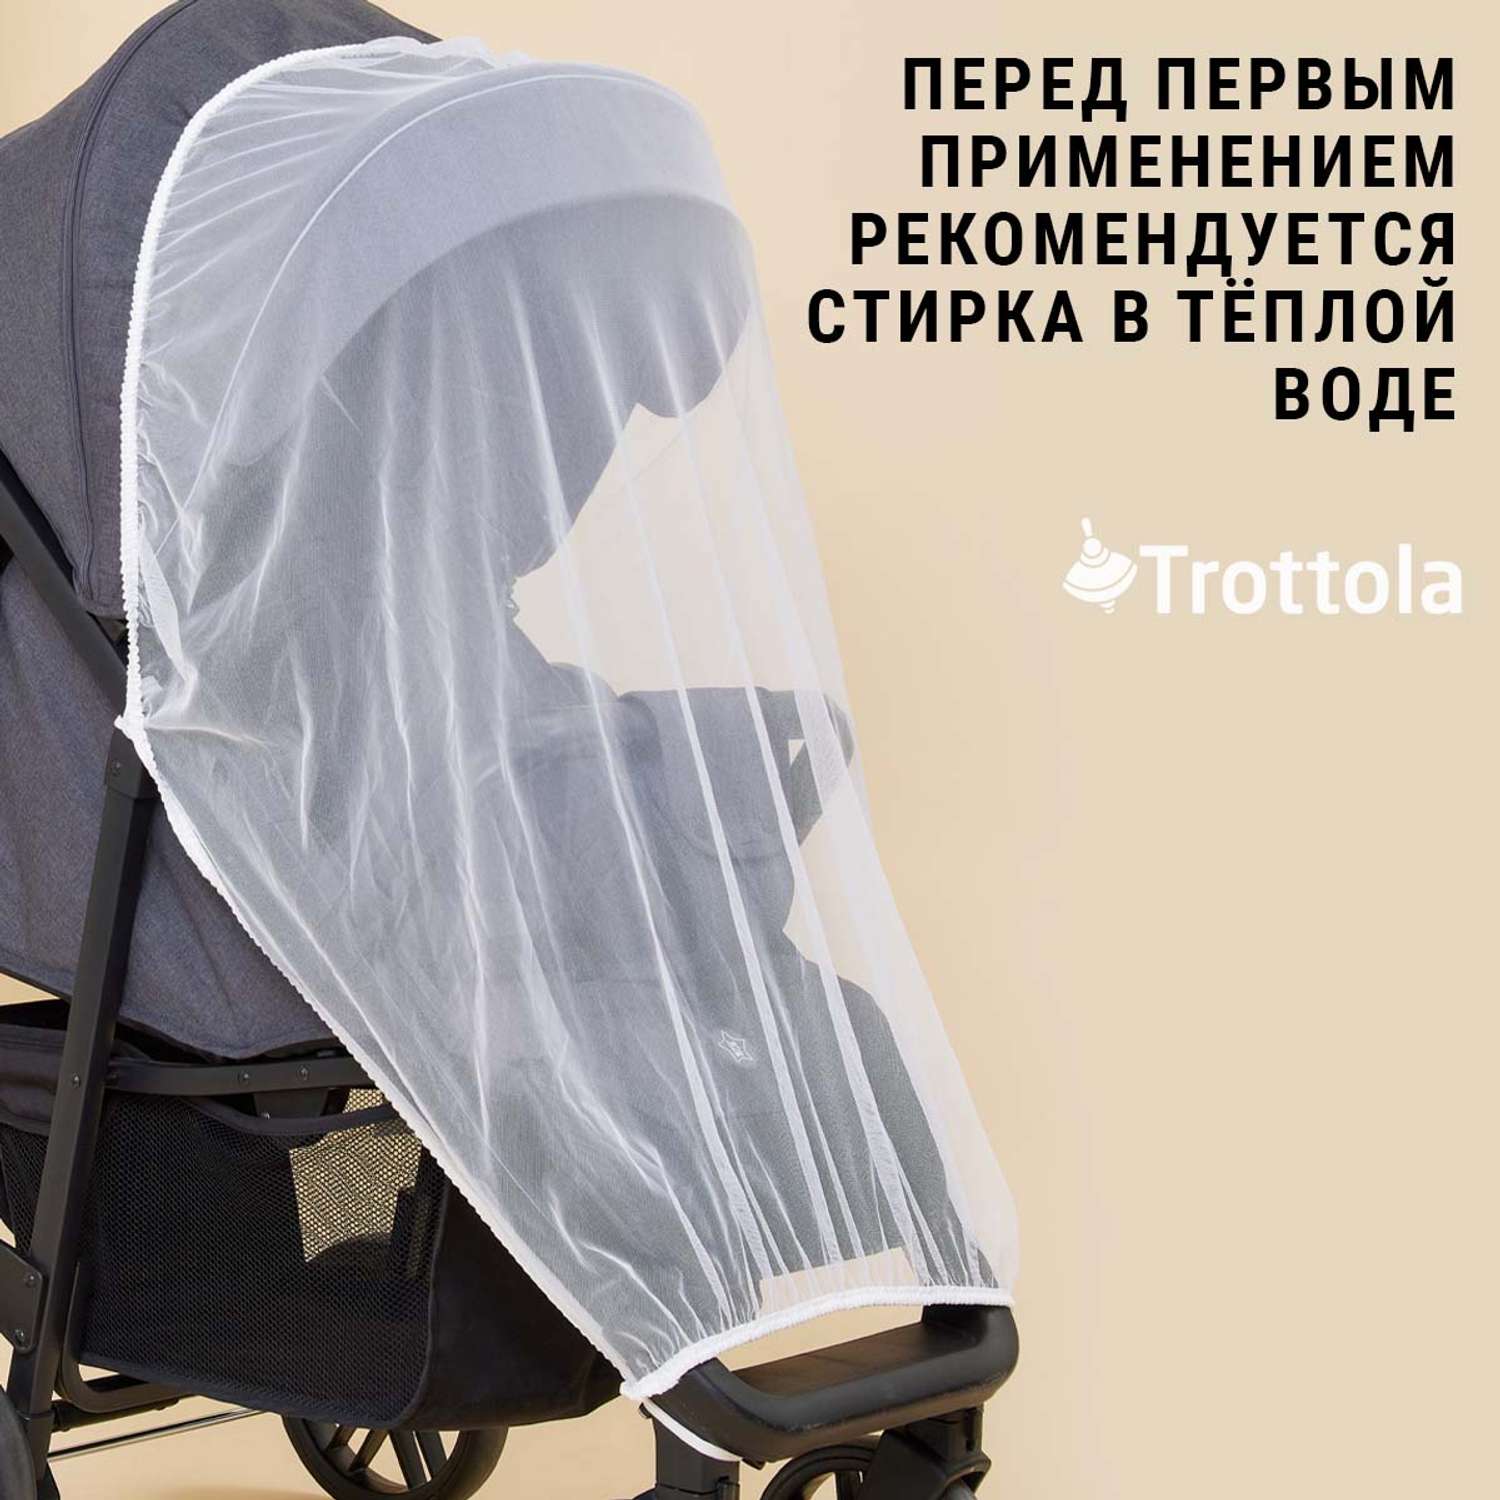 Москитная сетка Trottola белая на прогулочную коляску с мешочком Т040/белая - фото 9